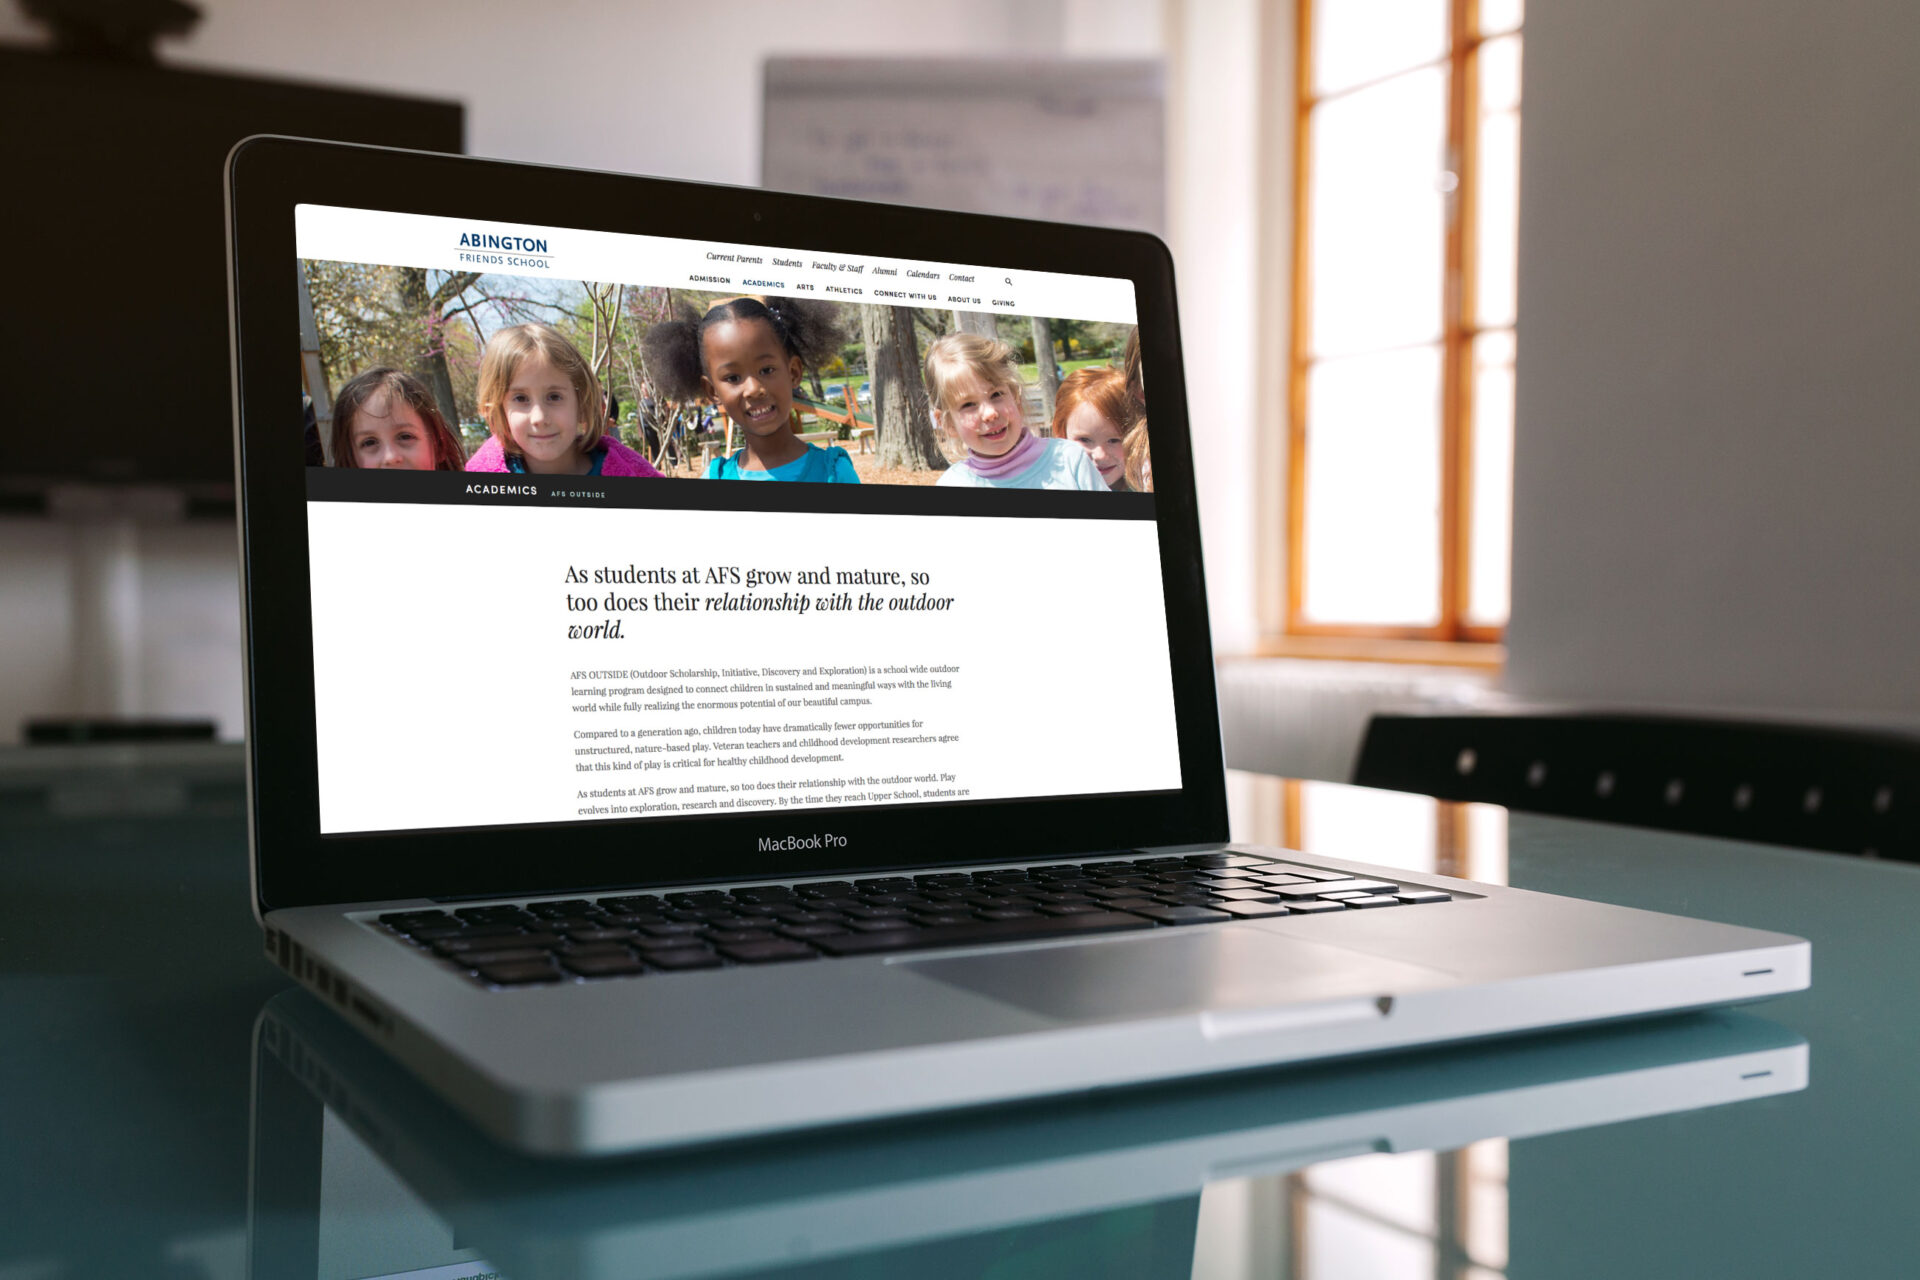 King Design Abington Friends School Website Open On A Laptop